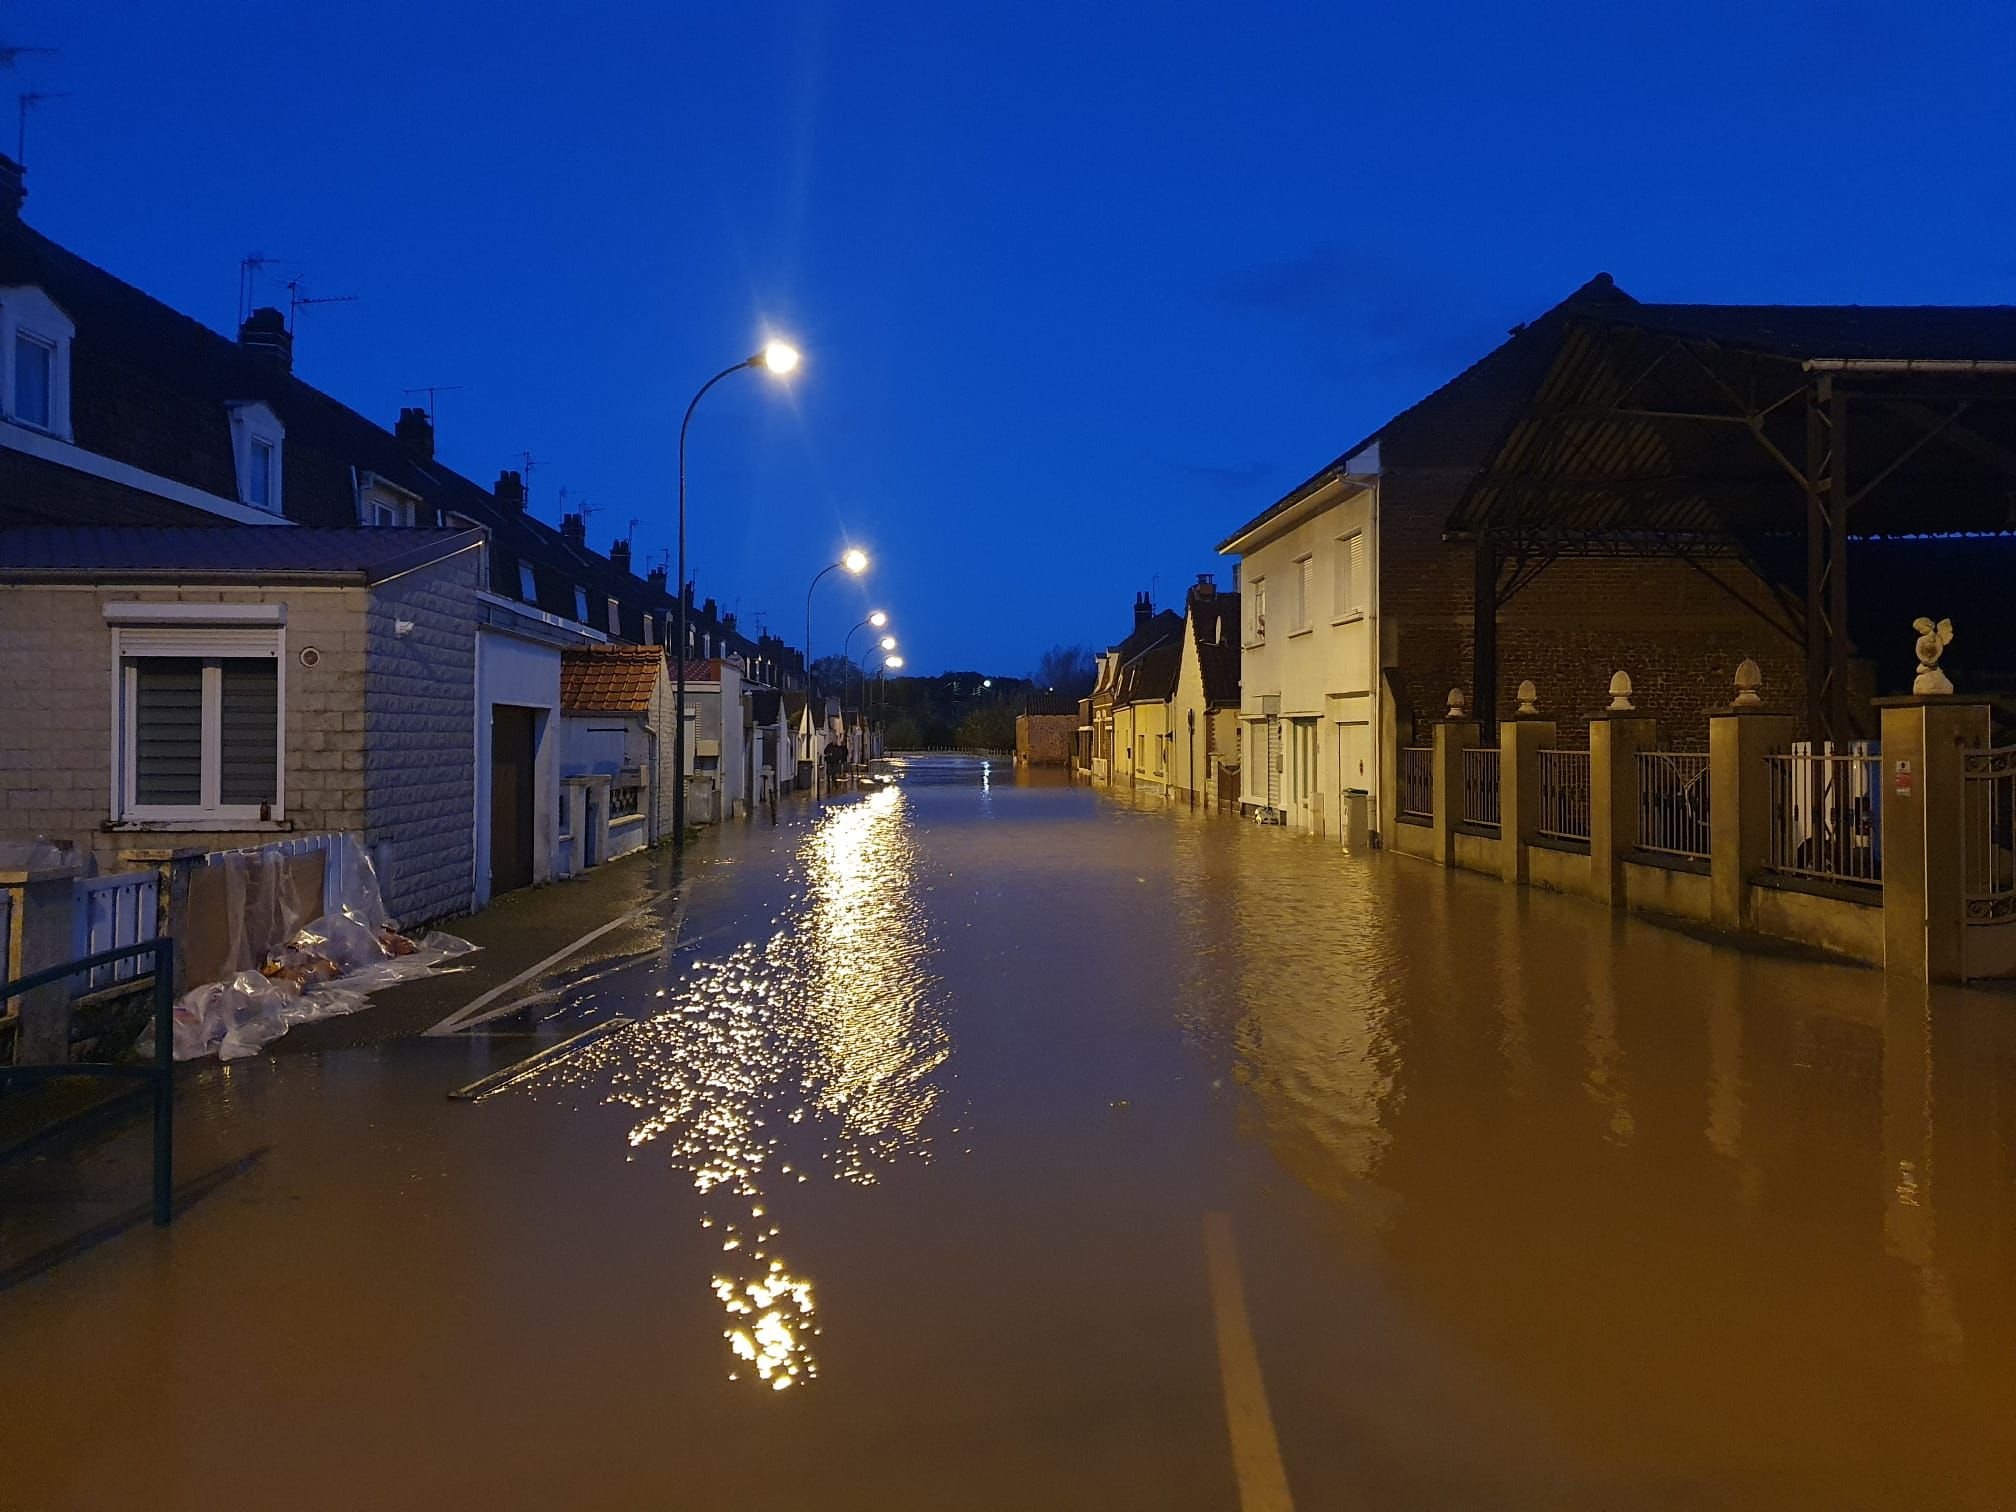 La commune de Blendecques (Pas-de-Calais) a été en grande partie inondée. LP/Nicolas Berrod